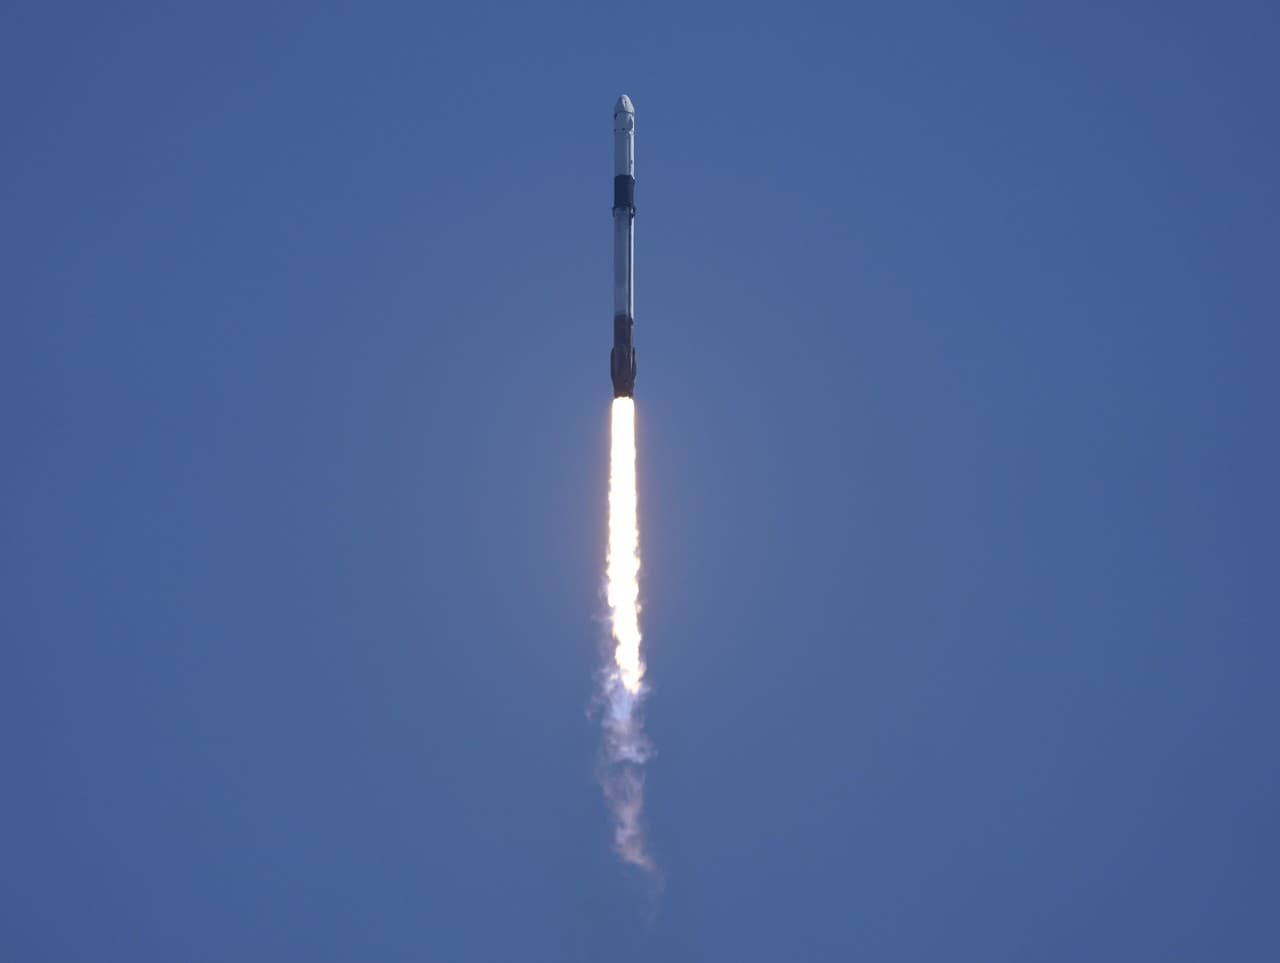 Nosná raketa Falcon 9 s kozmickou loďou Crew Dragon spoločnosti SpaceX  odštartovala zo štartovacieho komplexu v Kennedyho vesmírnom stredisku NASA na Floride.